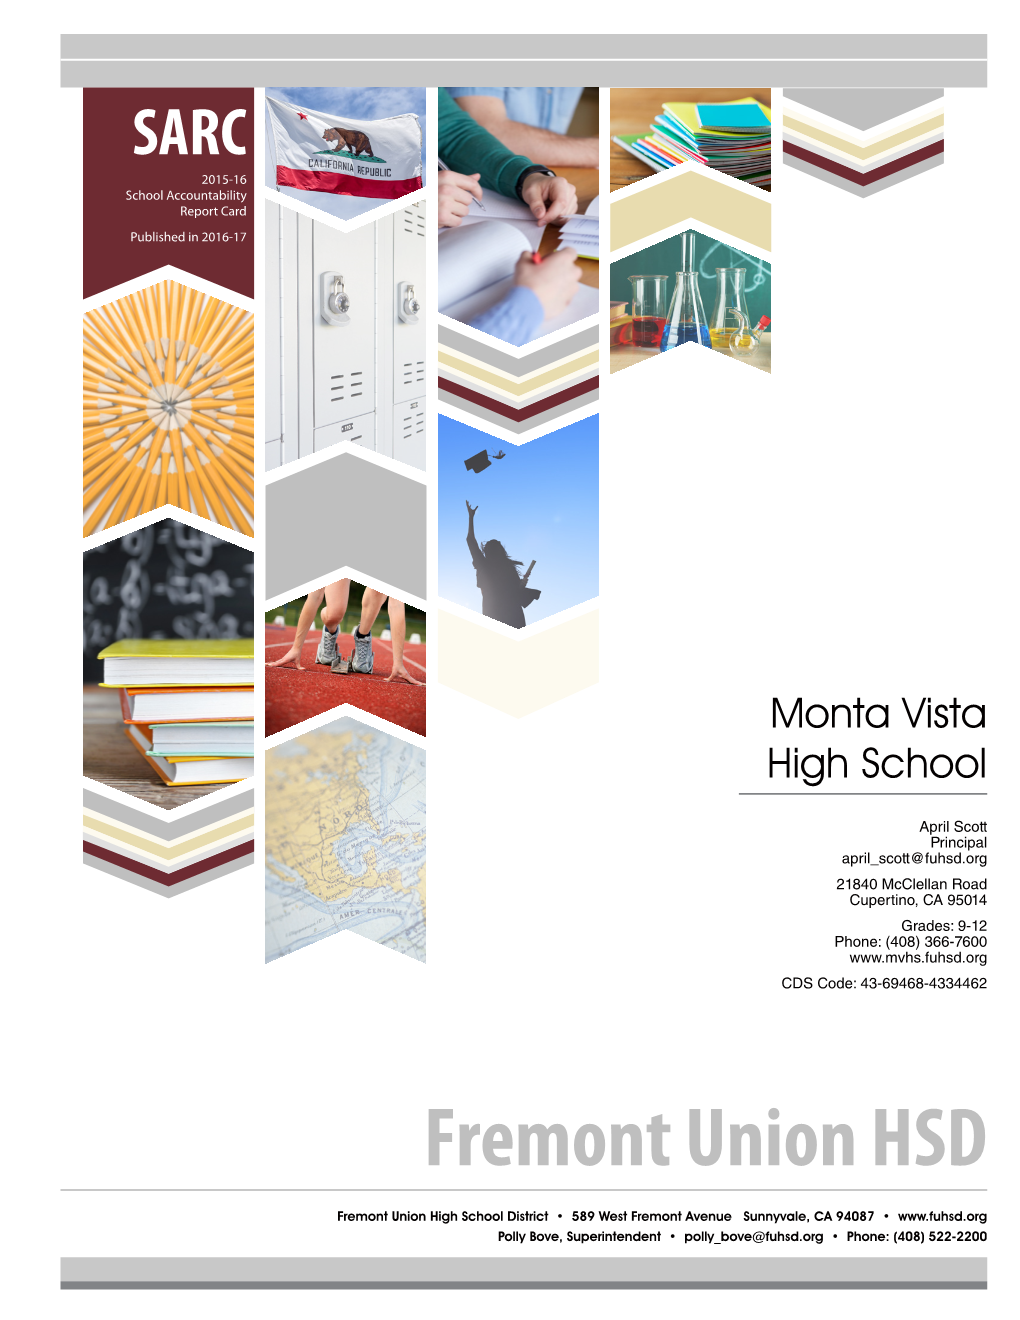 Fremont Union HSD